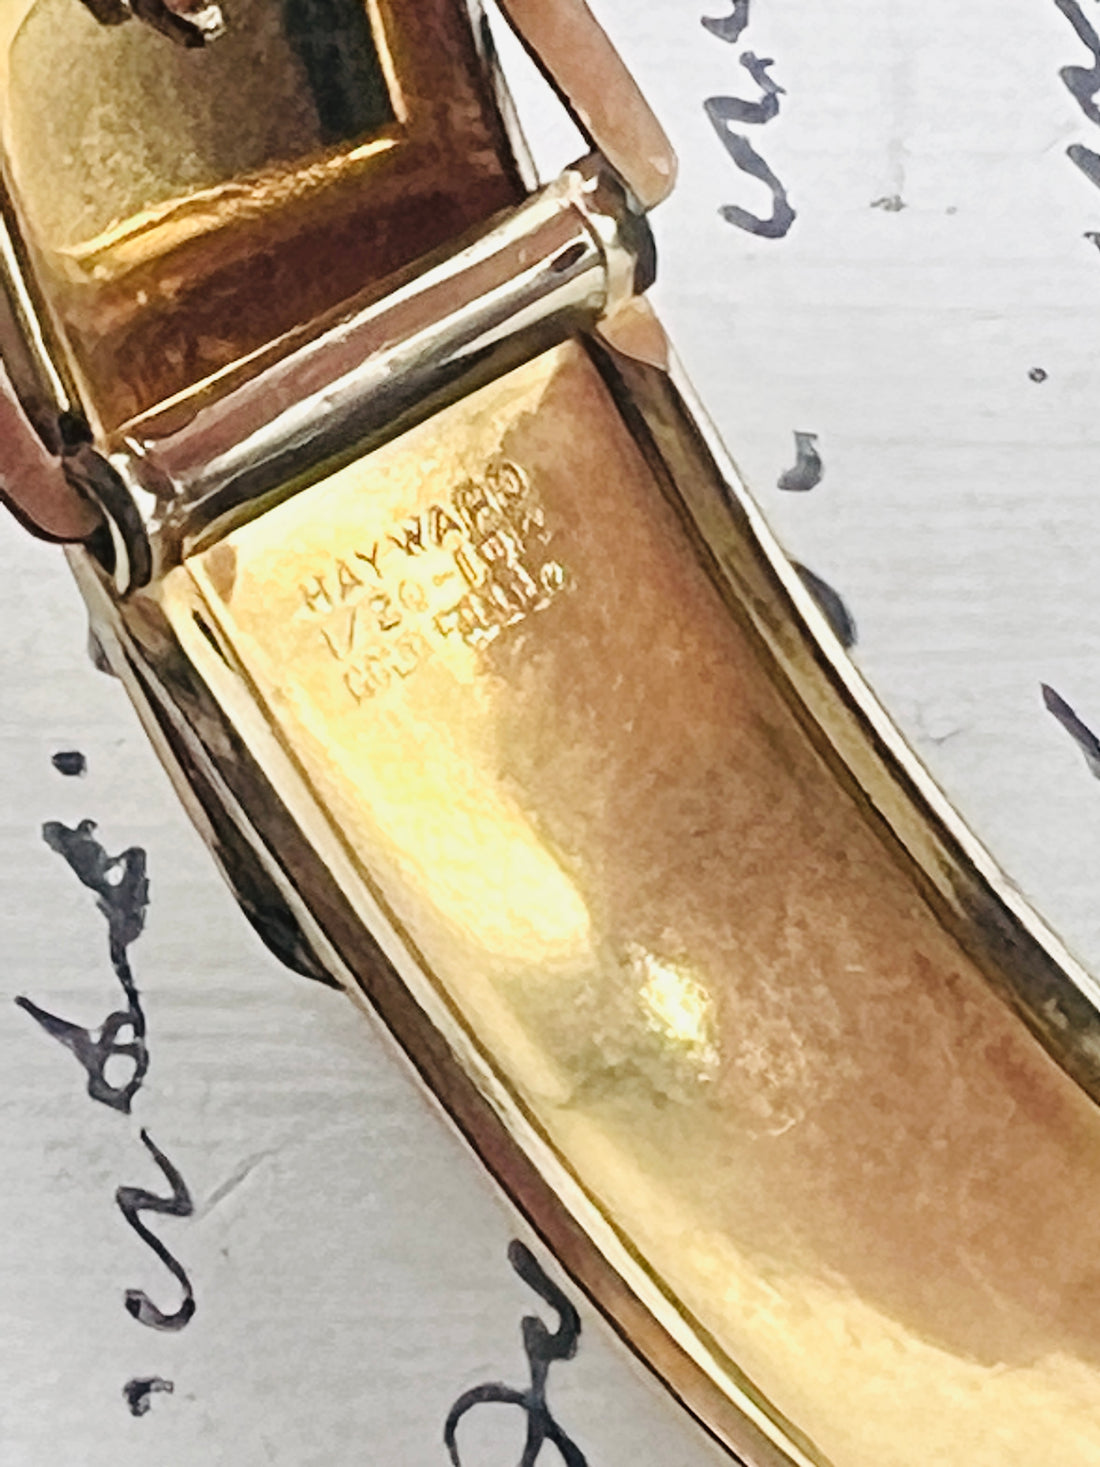 Hayward Gold Filled Bangle Bracelet